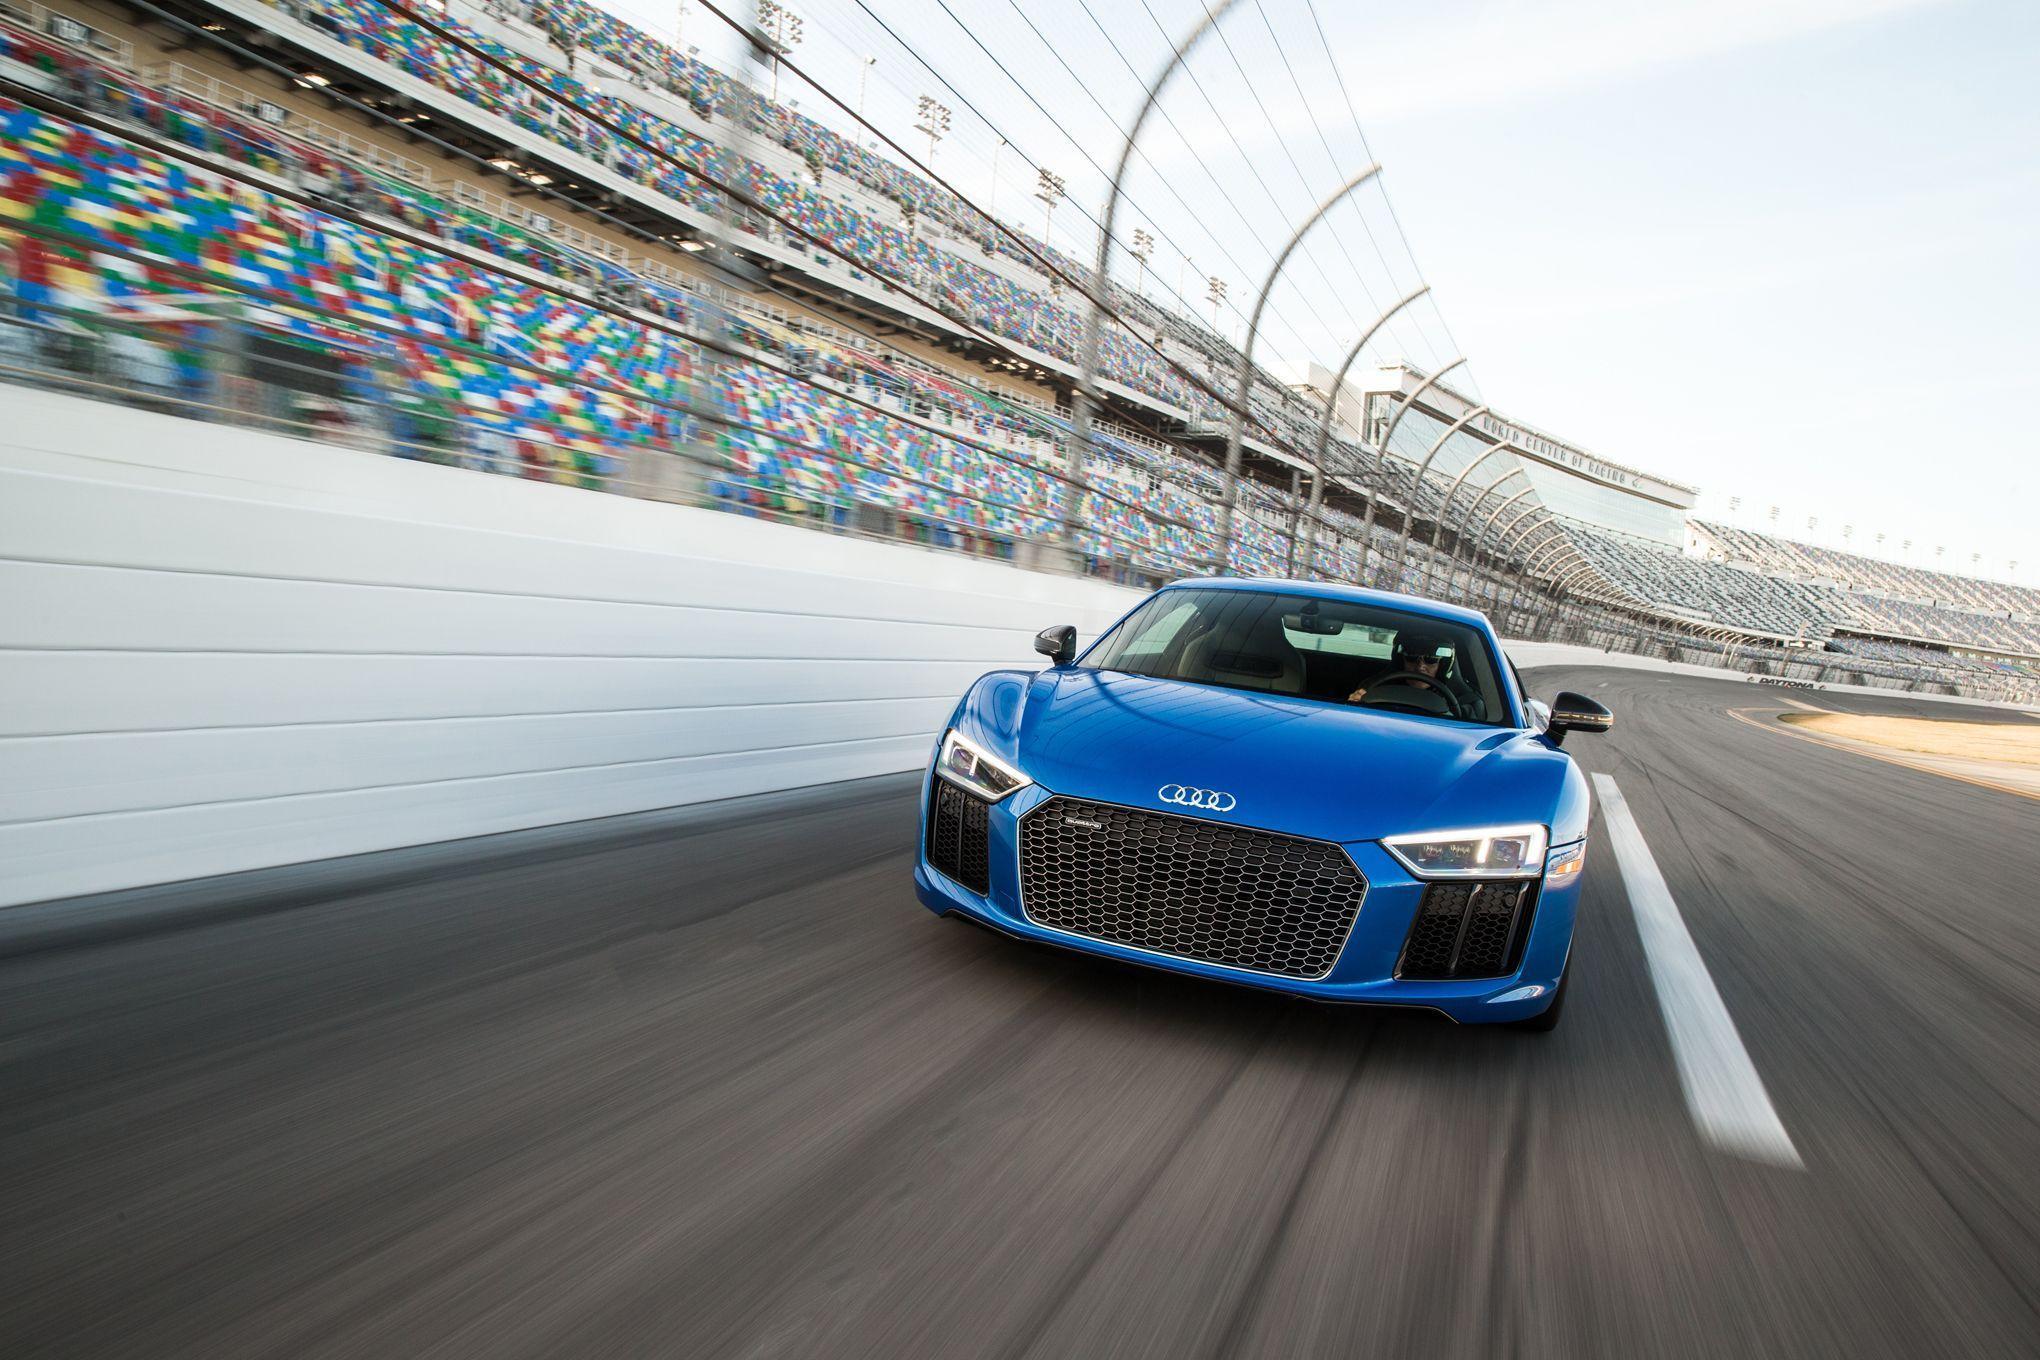 Audi R8 V10 Plus Review: Hot Lap at Daytona